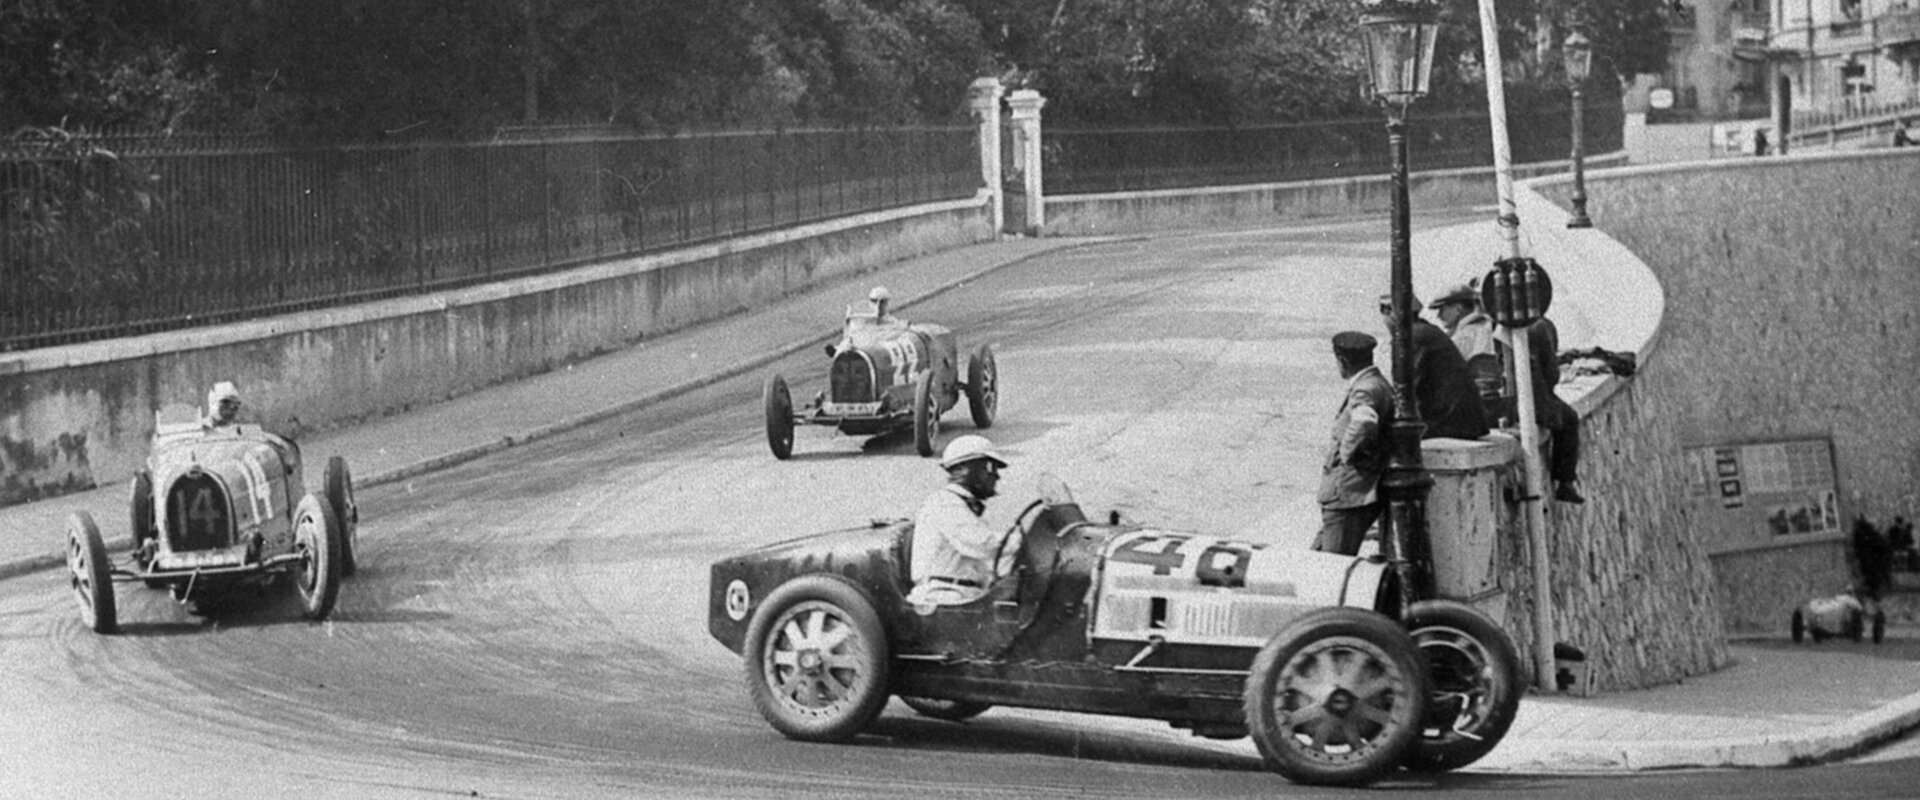 Grand Prix in Monaco in 1929.